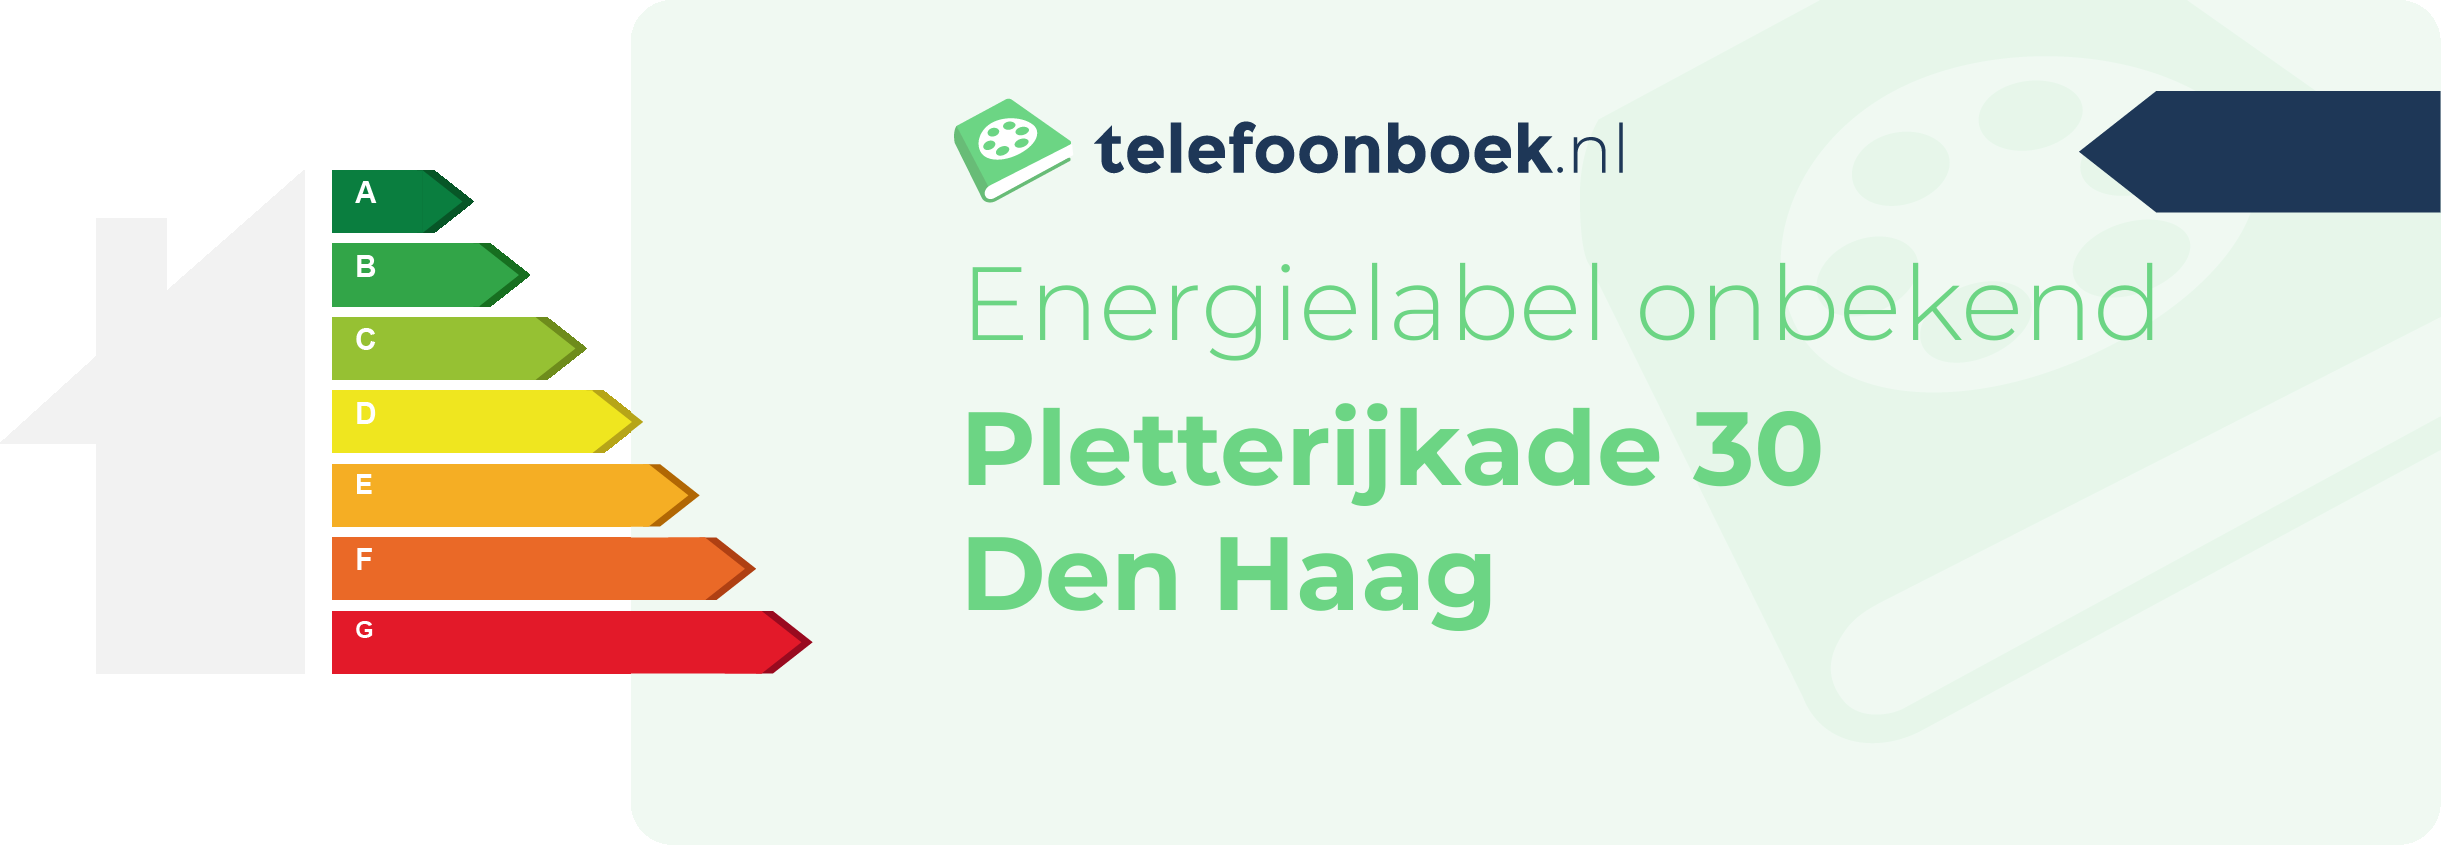 Energielabel Pletterijkade 30 Den Haag